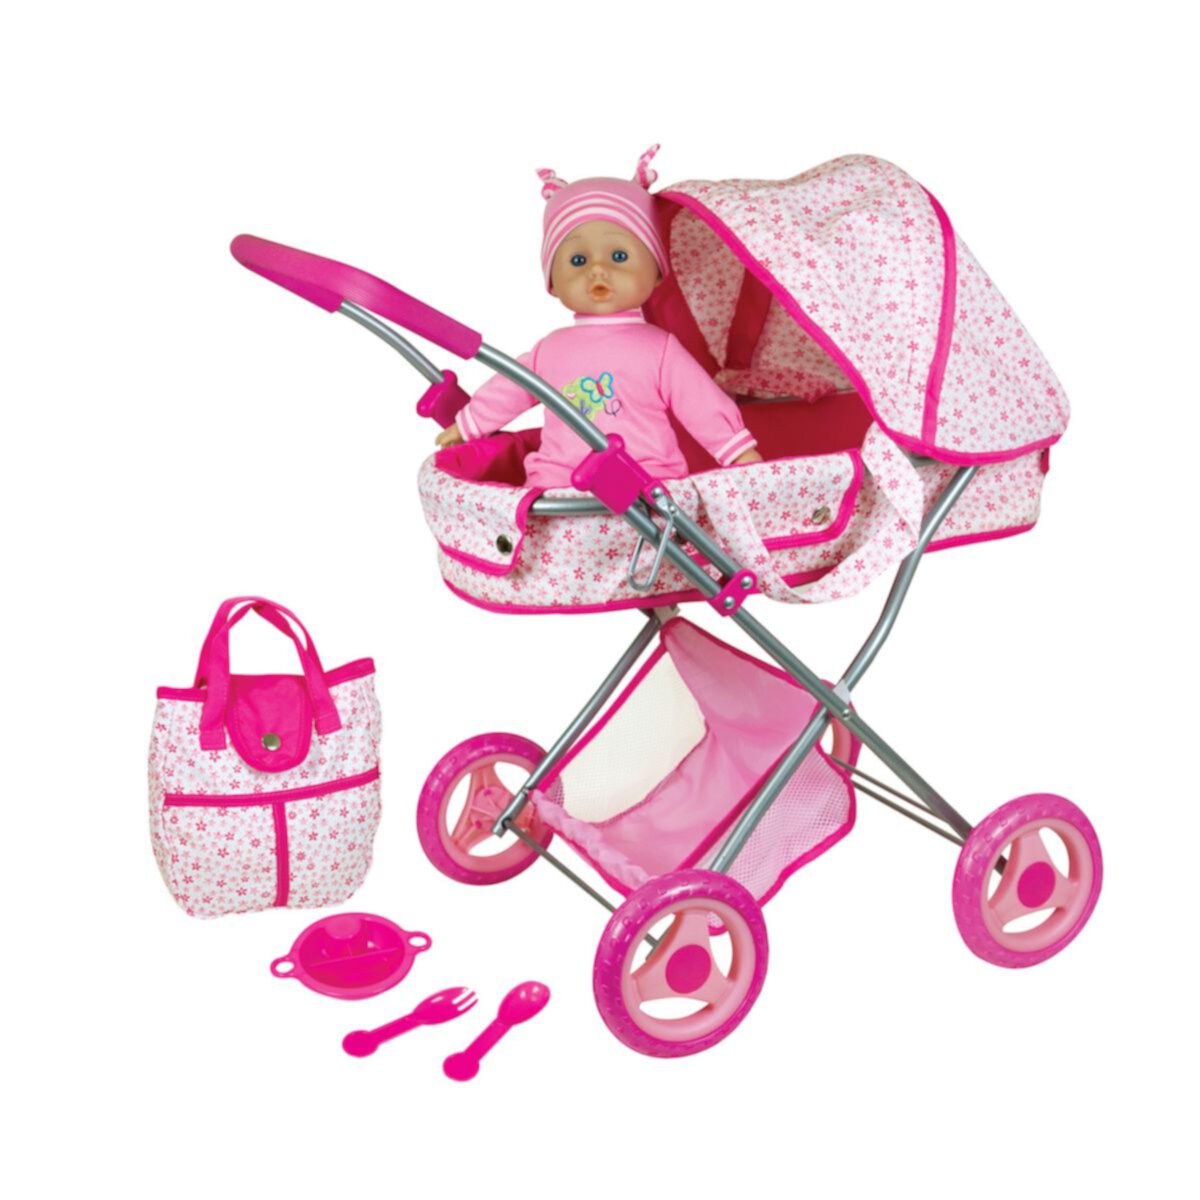 Детская коляска Lissi Doll с 13-дюймовой куклой и аксессуарами Lissi